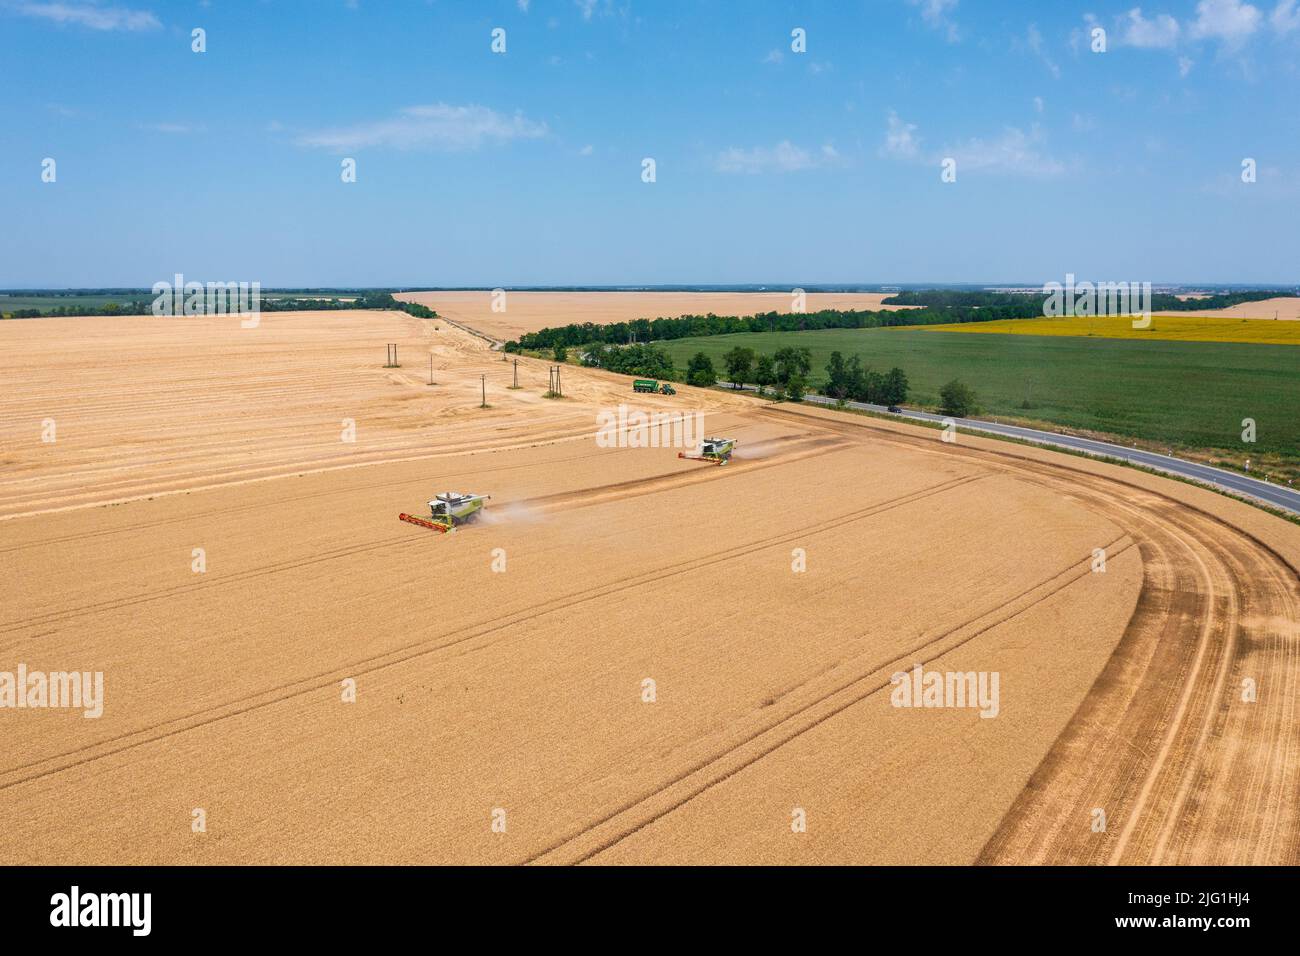 Luftaufnahme über Mähdrescher, die auf Weizenfeld arbeiten. Agrargeschäft, ungarische Agrarlandschaft, Lebensmittelkrise. Stockfoto